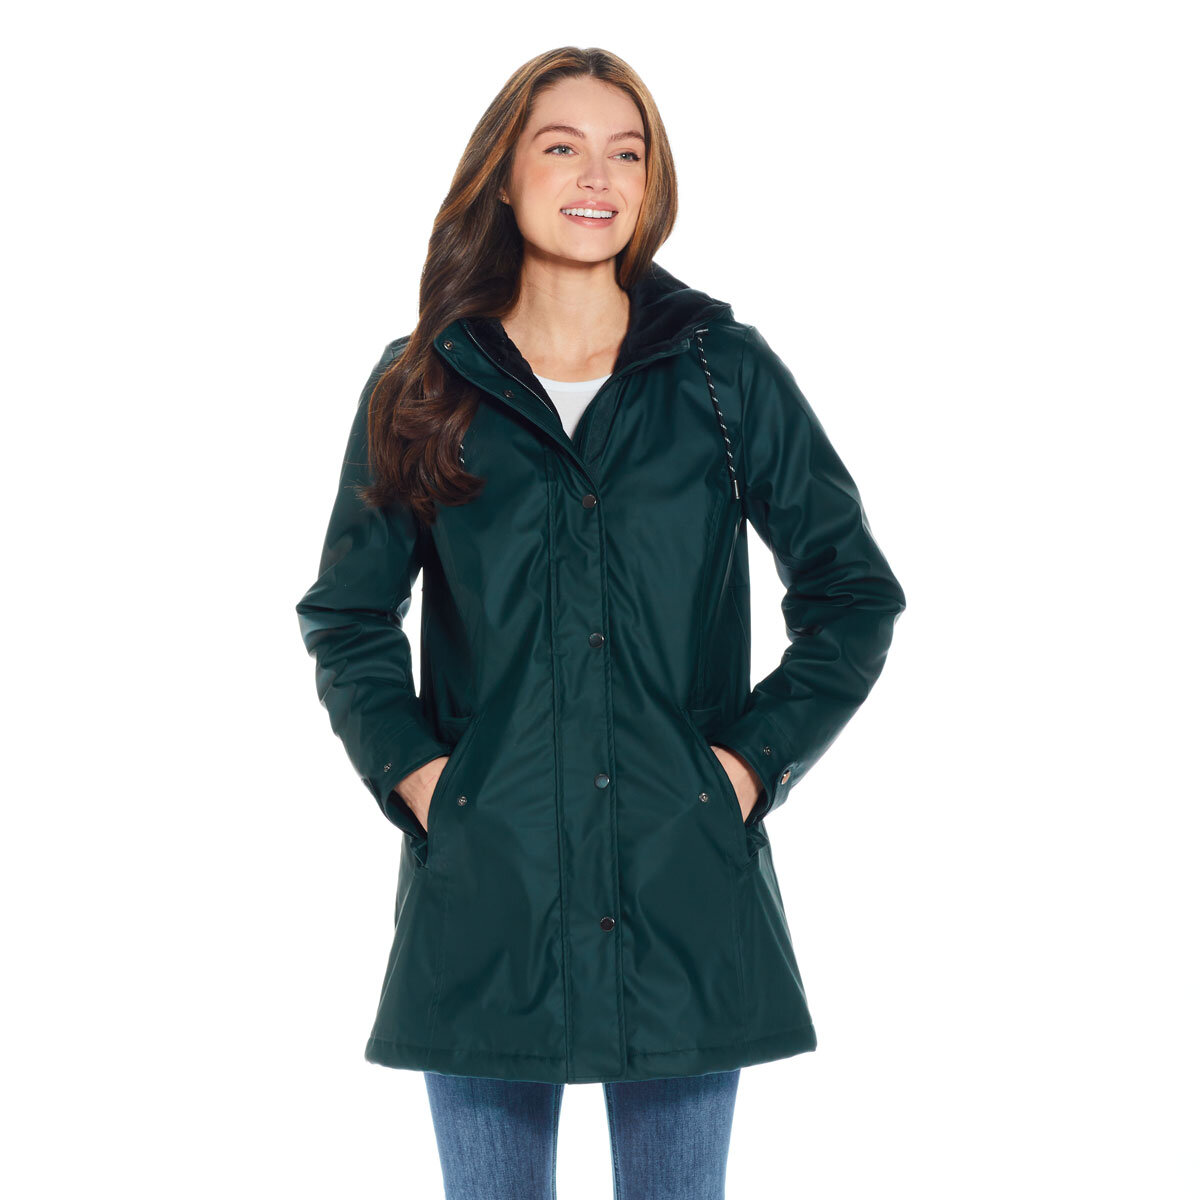 Weatherproof Ladies Slicker Jacket in Green | Costco UK